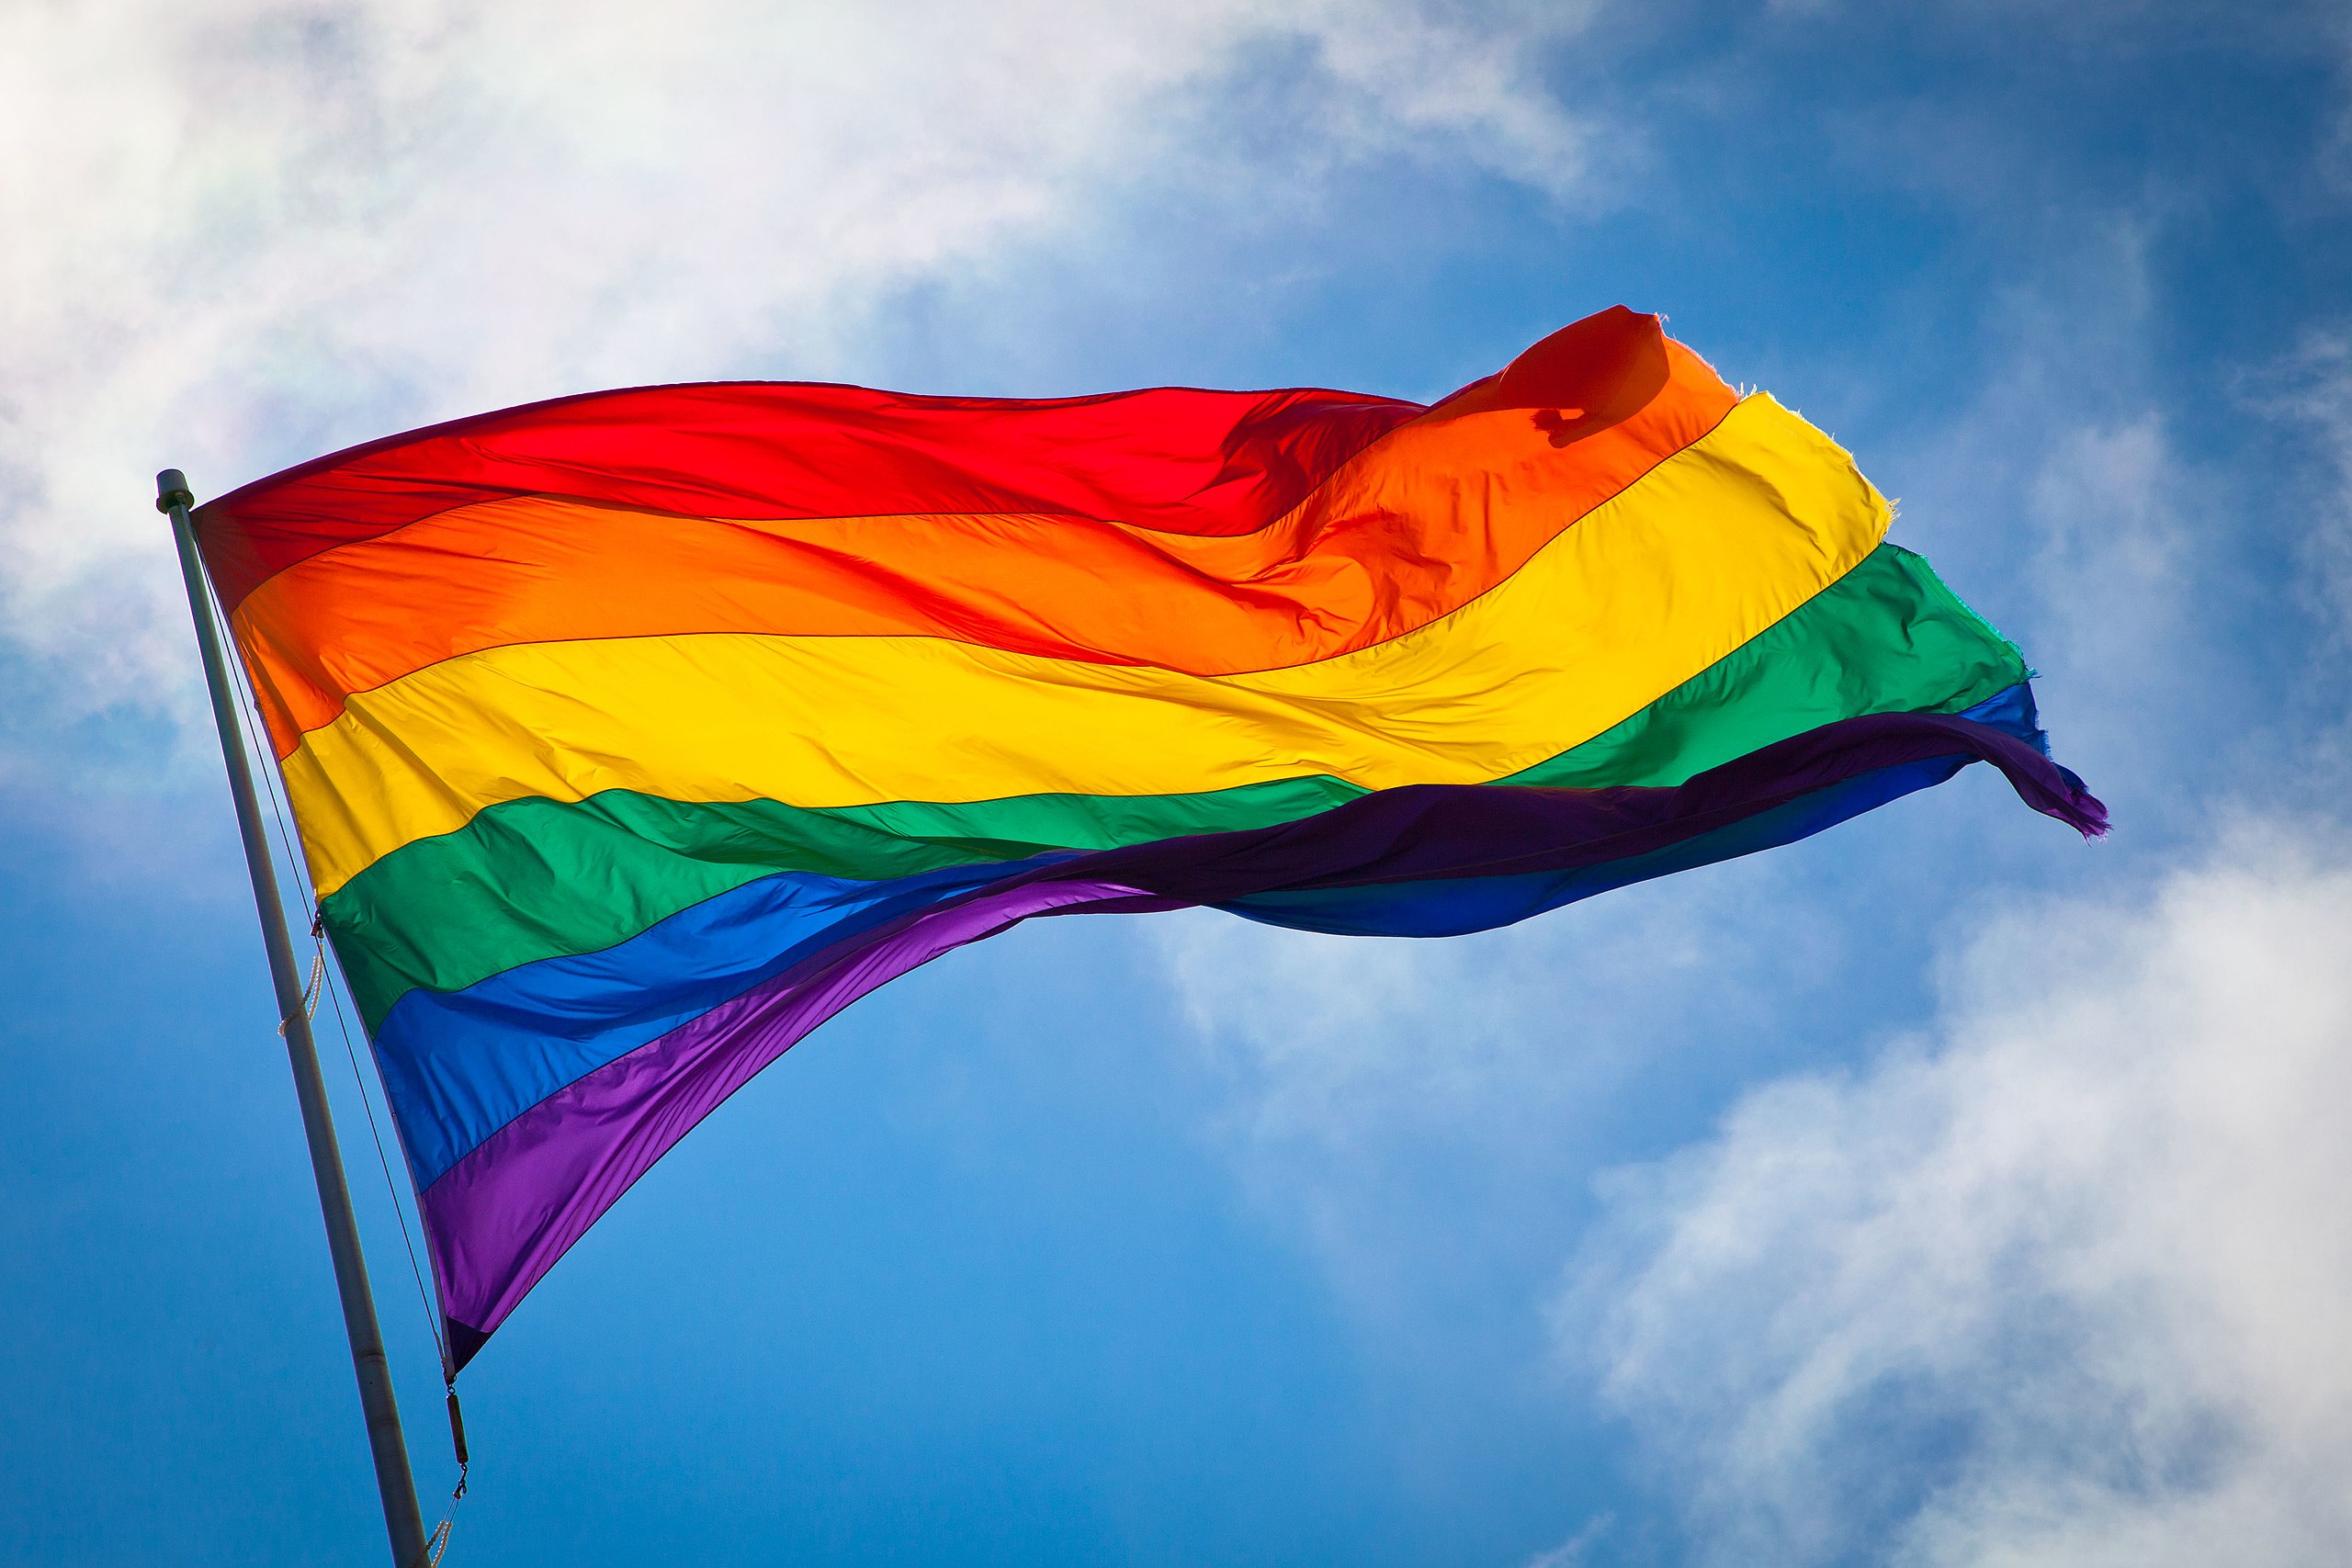 Cờ LGBT: Cờ LGBT (cờ cộng đồng những người đồng tính, chuyển giới, chuyển đổi giới tính và luyến ái) đã trở thành một biểu tượng thúc đẩy tình yêu và chấp nhận đa dạng tình dục, giới tính và thể chất. Với sự gia tăng của cộng đồng LGBT ở Việt Nam, nhiều người đã sẵn sàng hiển thị cờ LGBT và cổ vũ cho những người yêu thích của họ. Hãy cùng xem những hình ảnh đẹp và khơi gợi cảm hứng yêu đời với cờ LGBT.